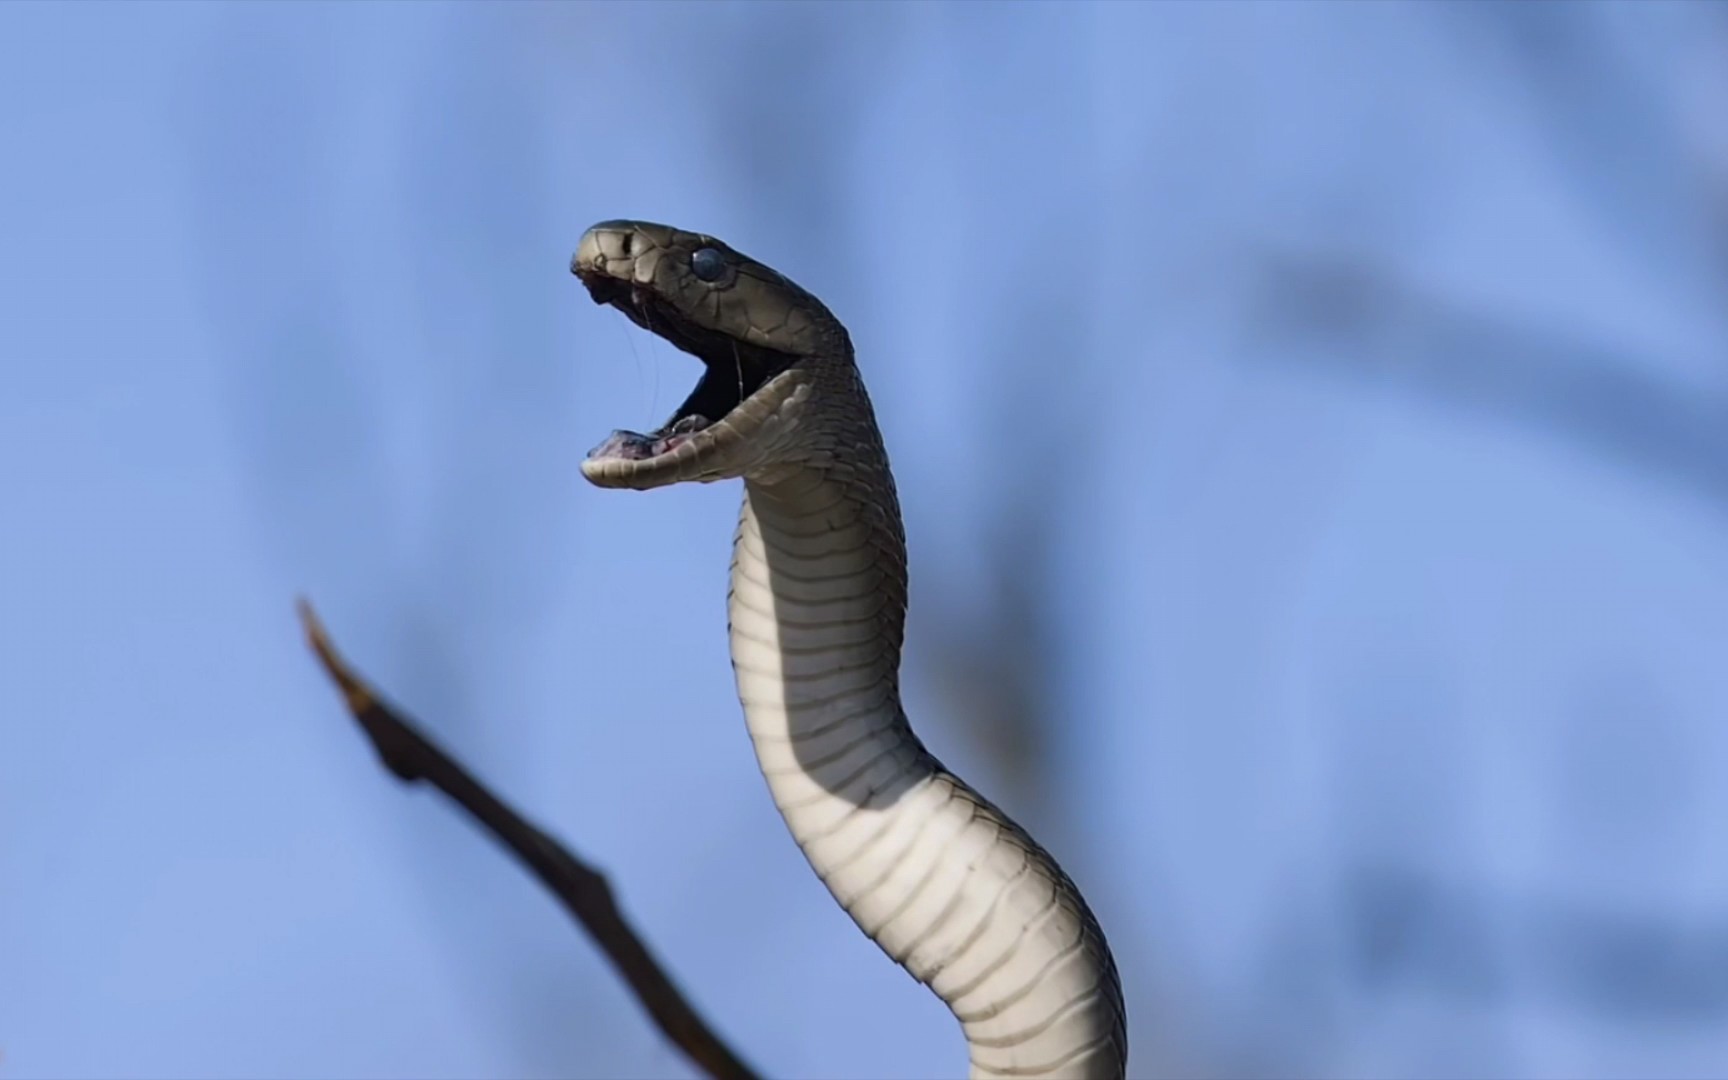 黑曼巴最具危险性的毒蛇之一